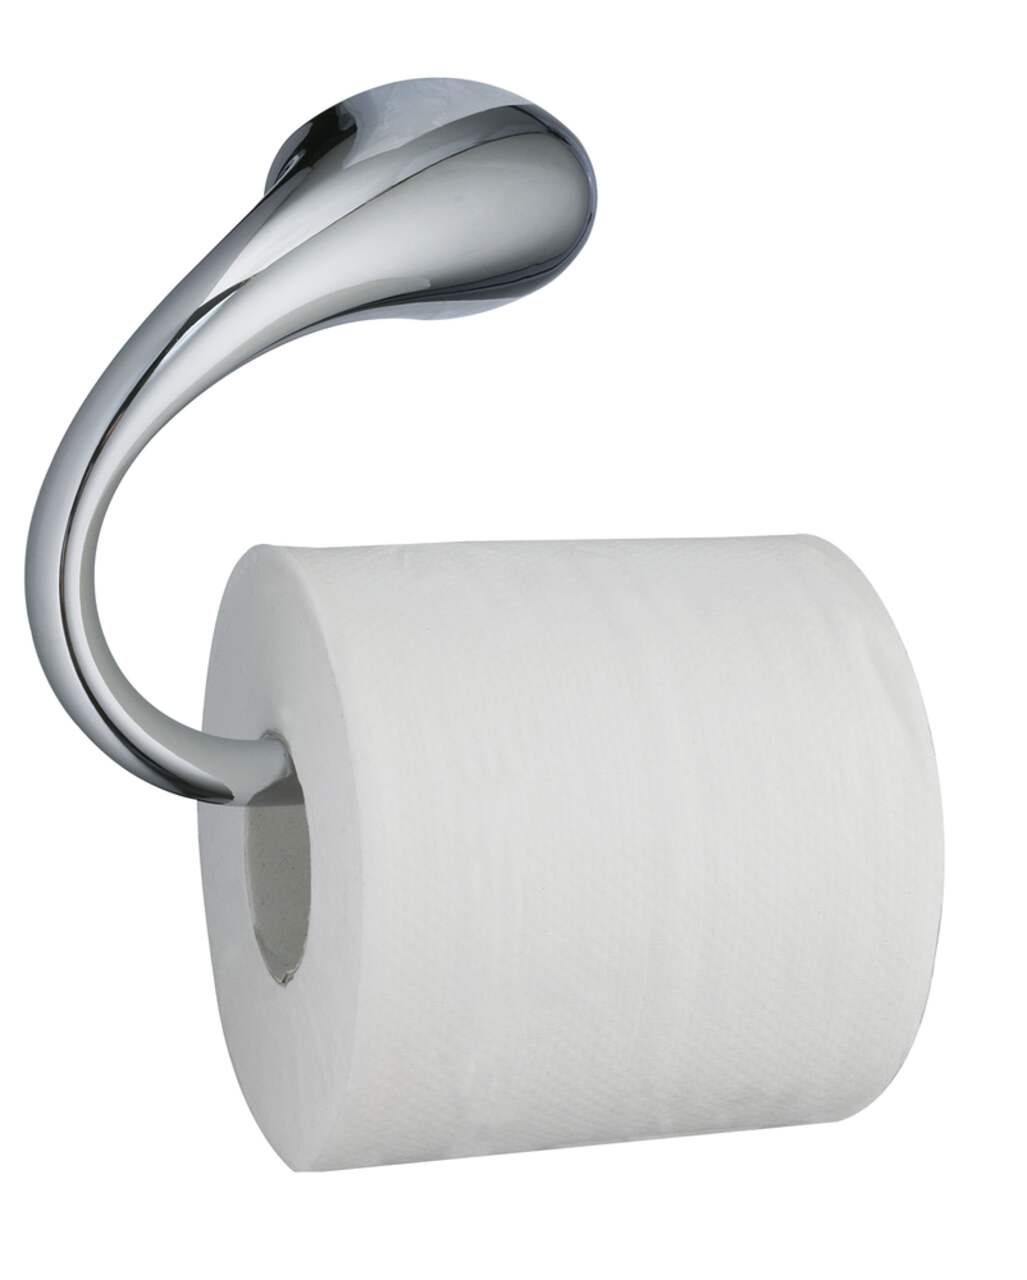 Porte-papier toilette aucun perçage requis, porte-papier toilette